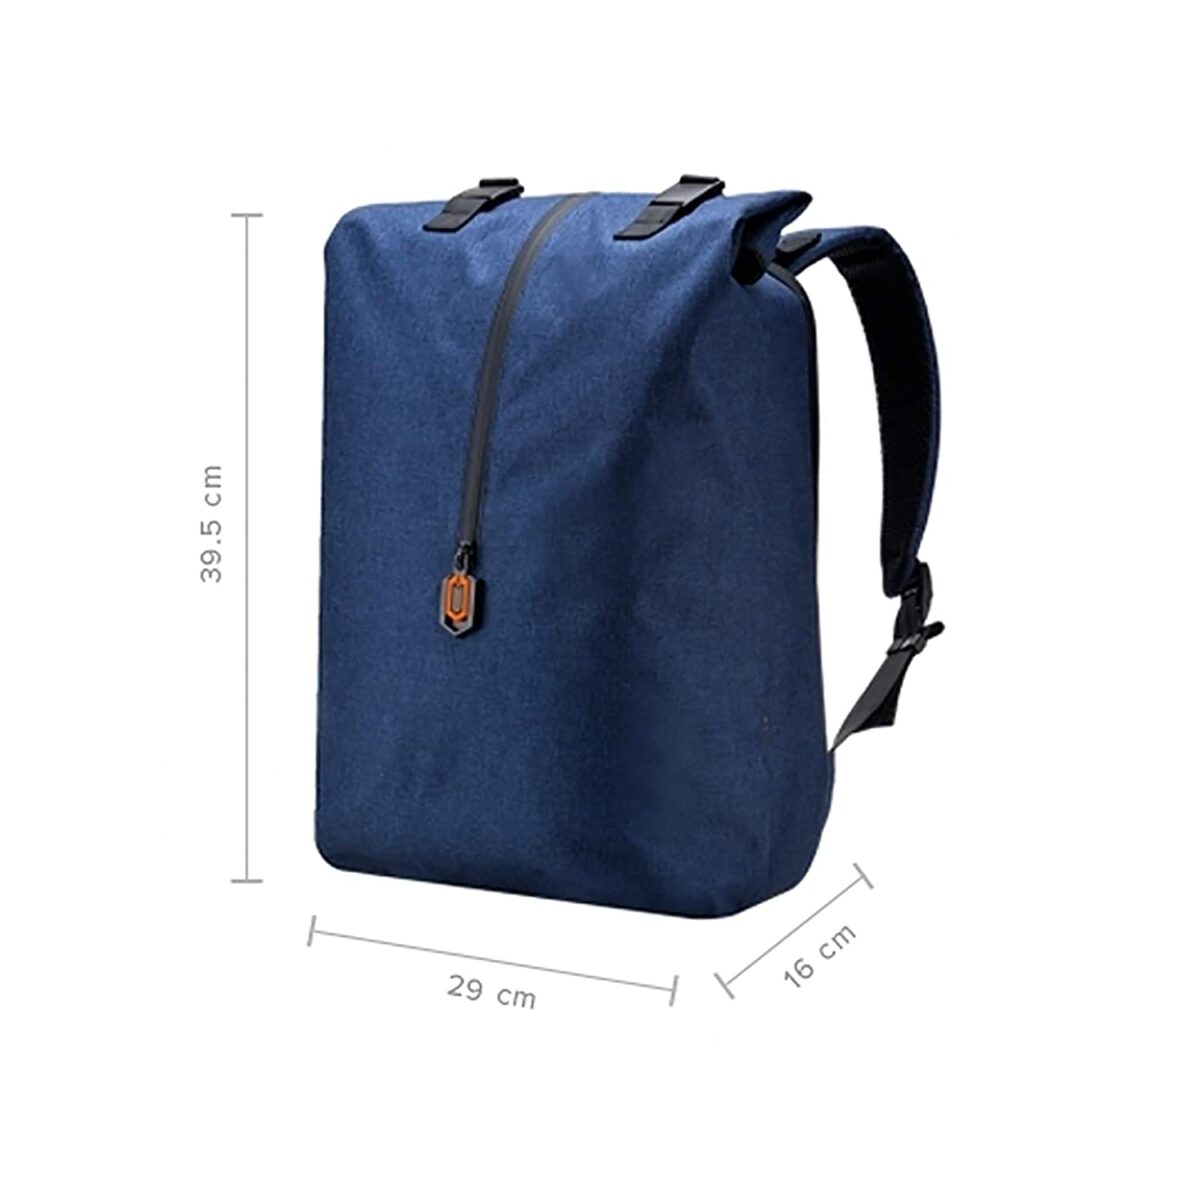 Mi Travel Laptop Backpack (Blue)